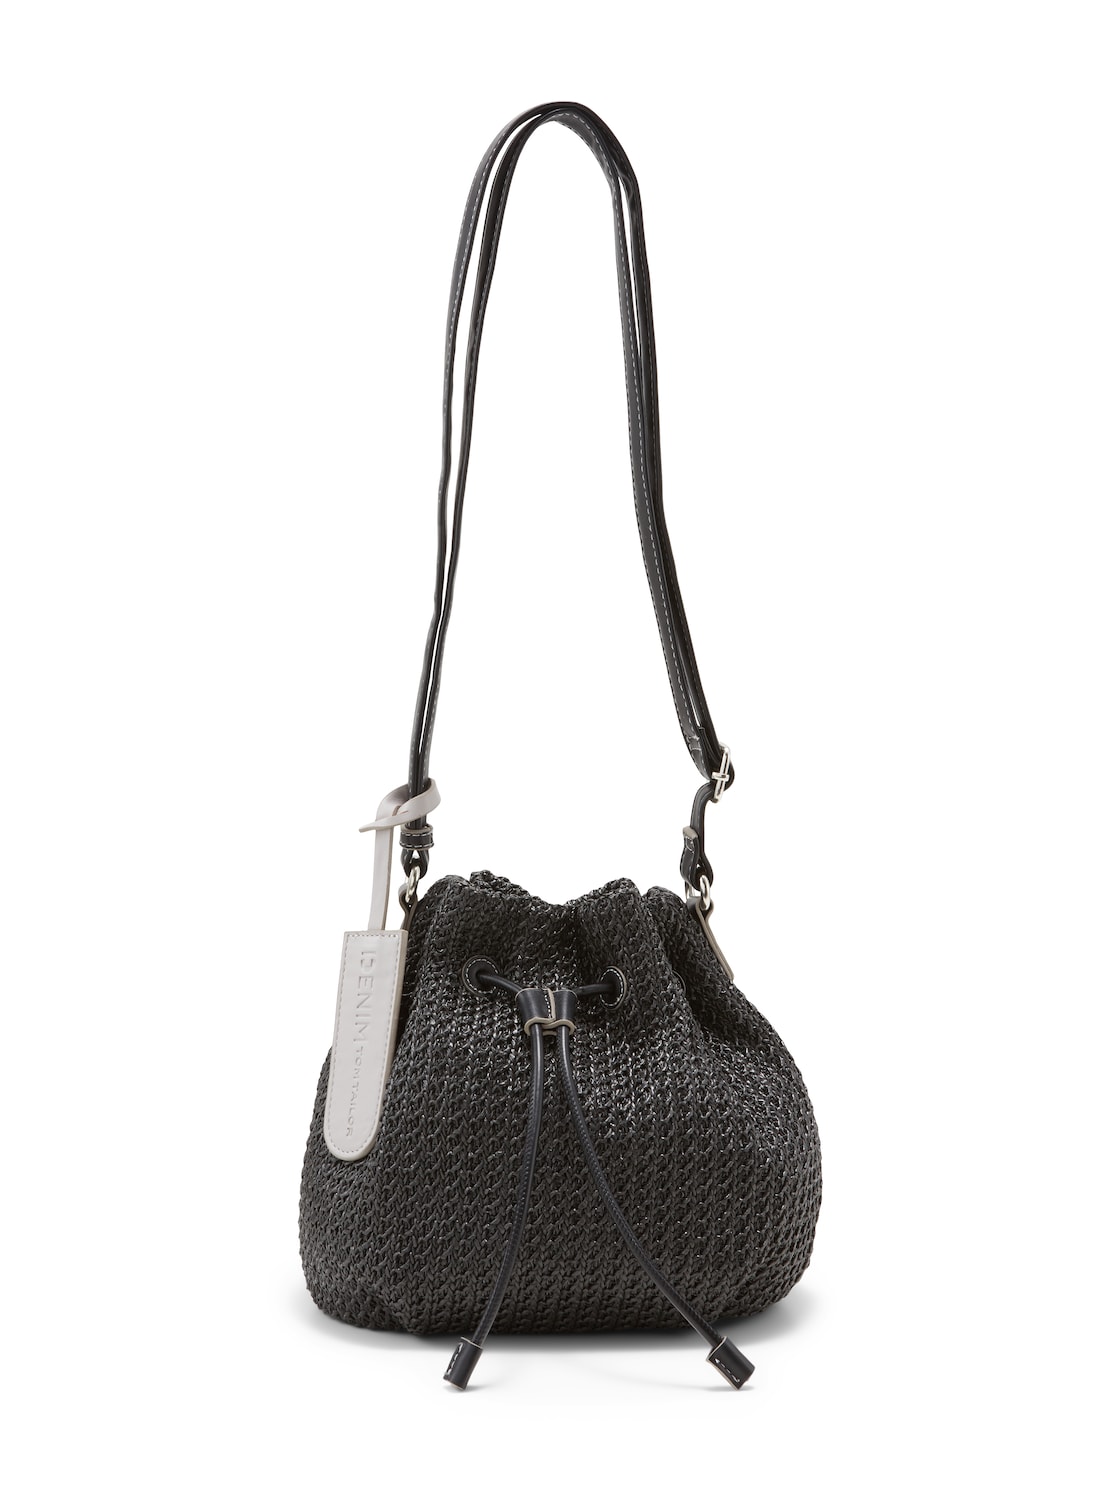 TOM TAILOR DENIM Damen CARO Bucket Bag in Häkeloptik, schwarz, Gr. ONESIZE von Tom Tailor Denim